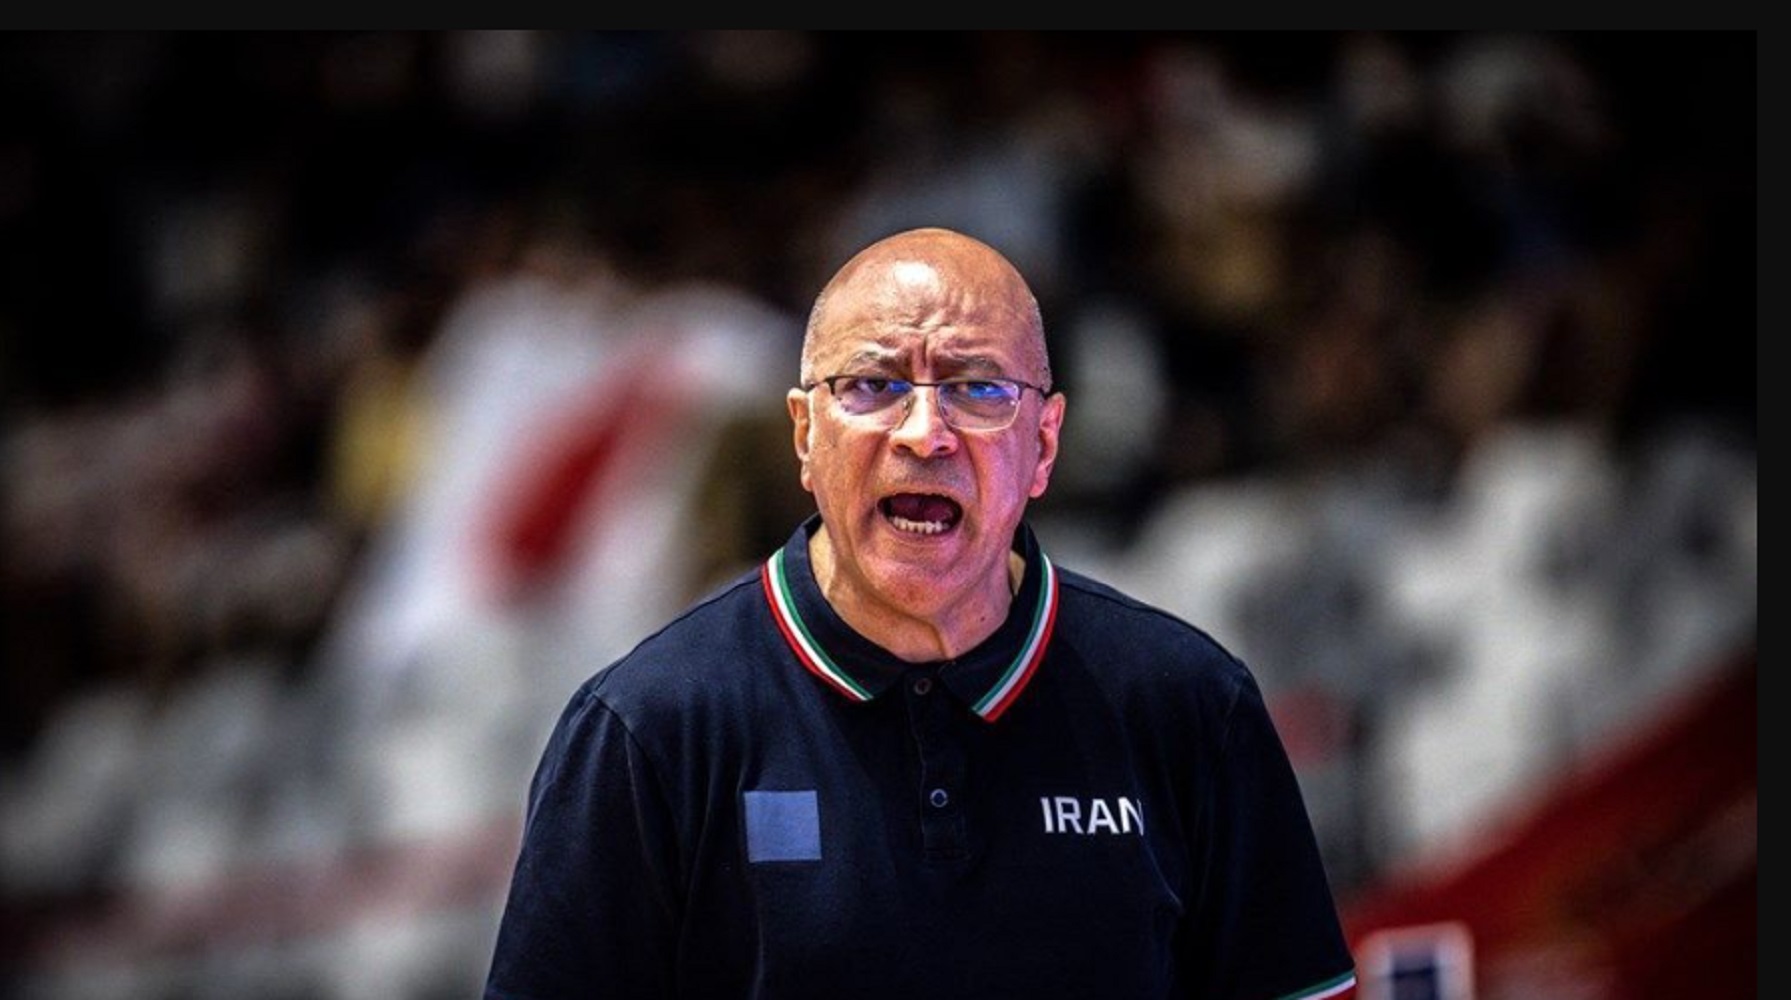 درگیری لفظی شدید کاپیتان تیم ملی ایران با آقای سرمربی/ ملی پوشان و حاضران در سالن شگفت زده شدند